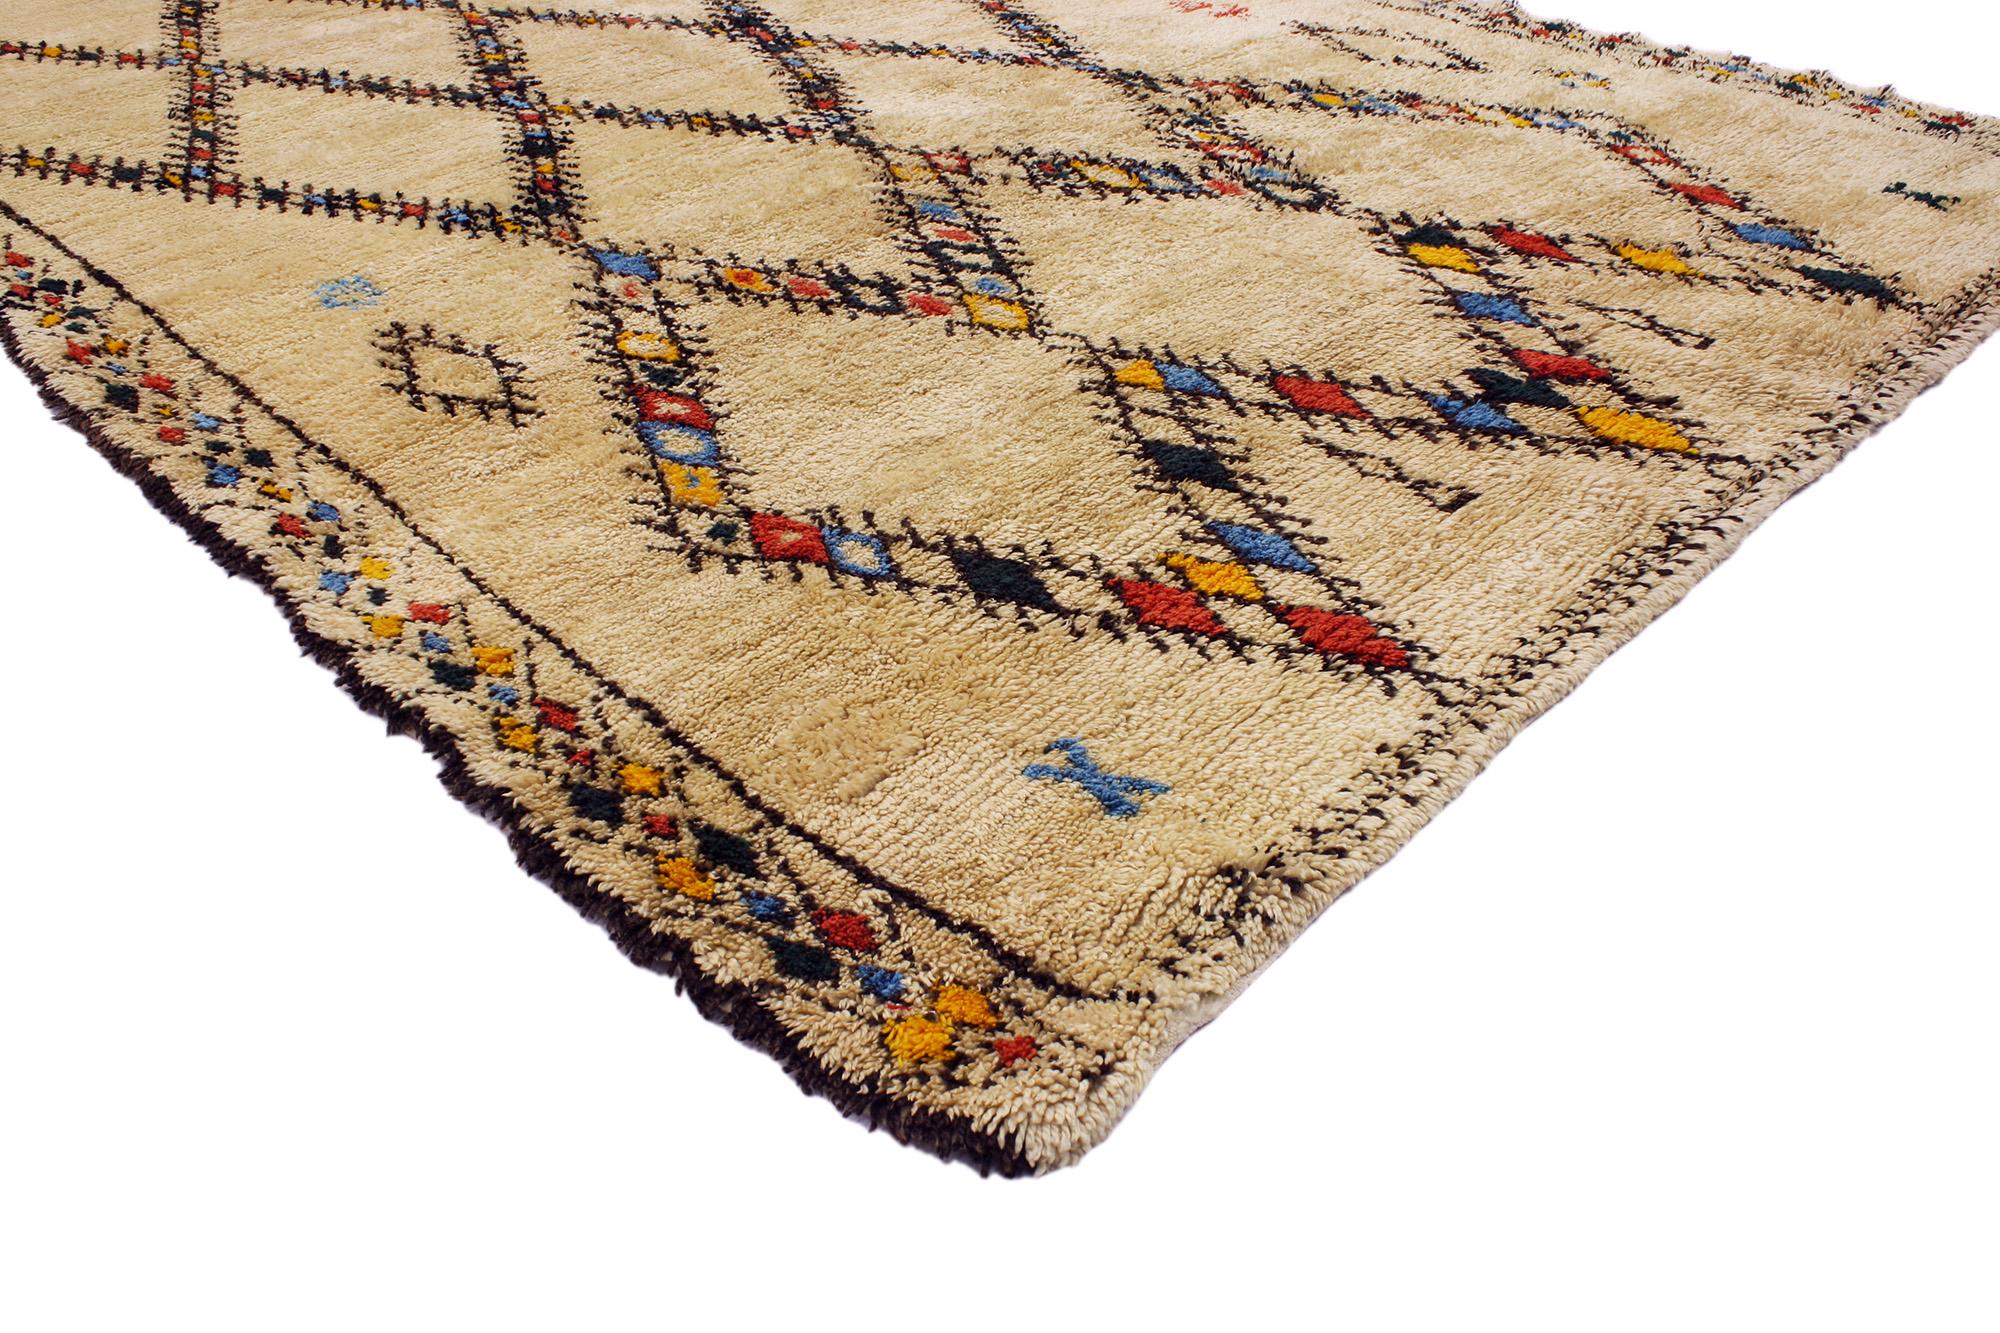 20348 Tapis marocain Vintage Beni Ourain, 06'07 x 10'00. Issus de la tribu estimée des Beni Ourain au Maroc, ces tapis méticuleusement confectionnés honorent la tradition grâce à un travail artisanal minutieux. Fabriqués à partir de laine de mouton